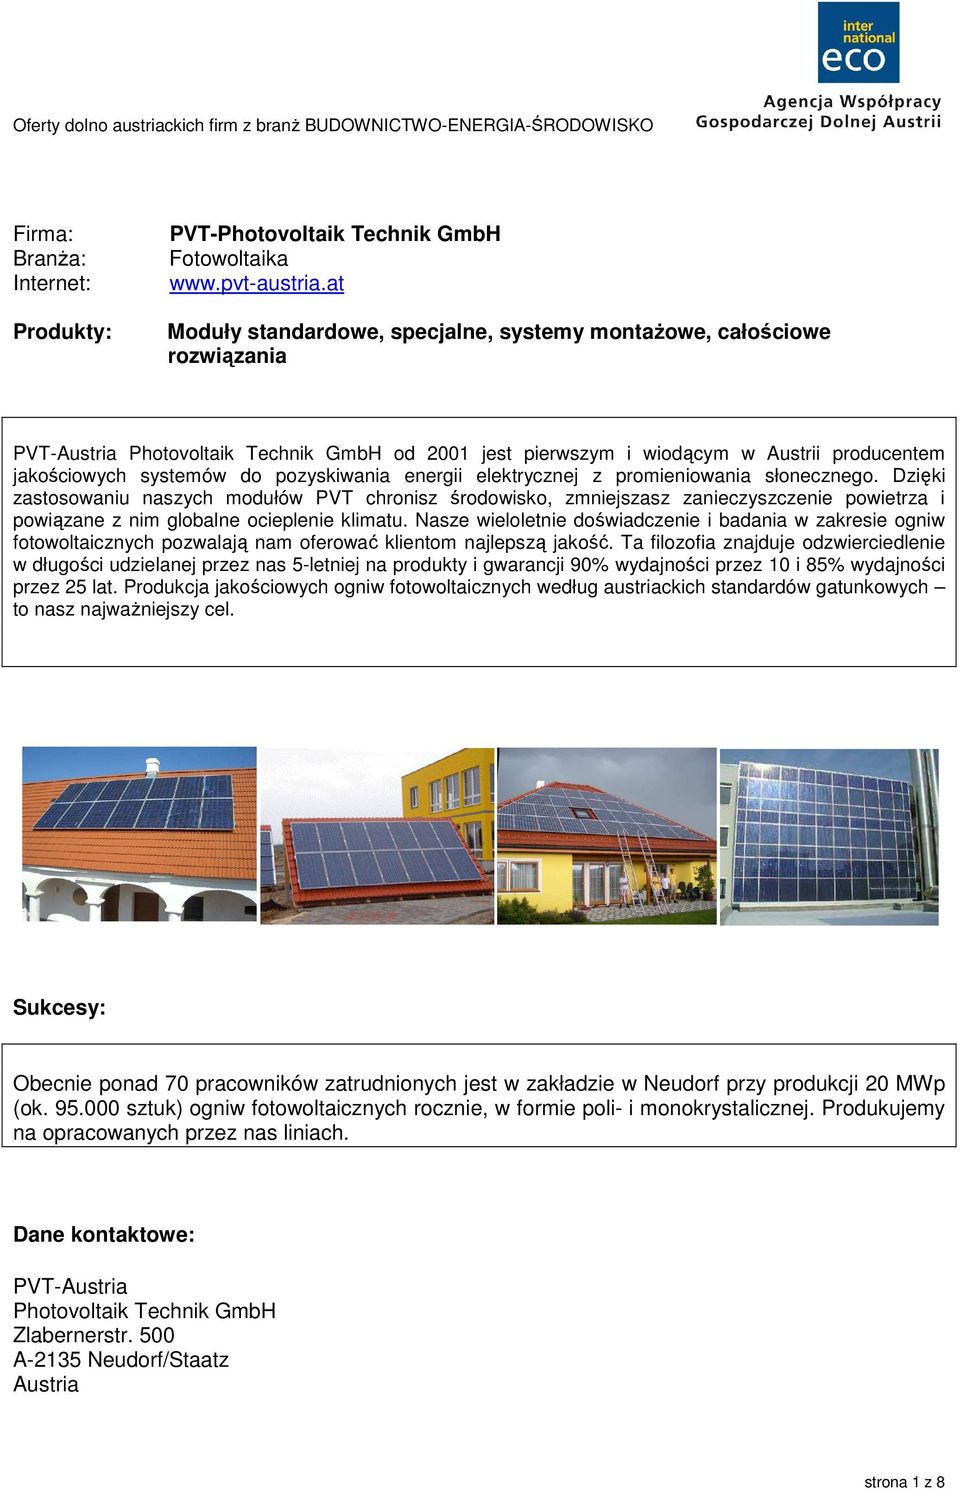 Produkcja jakościowych ogniw fotowoltaicznych według austriackich standardów